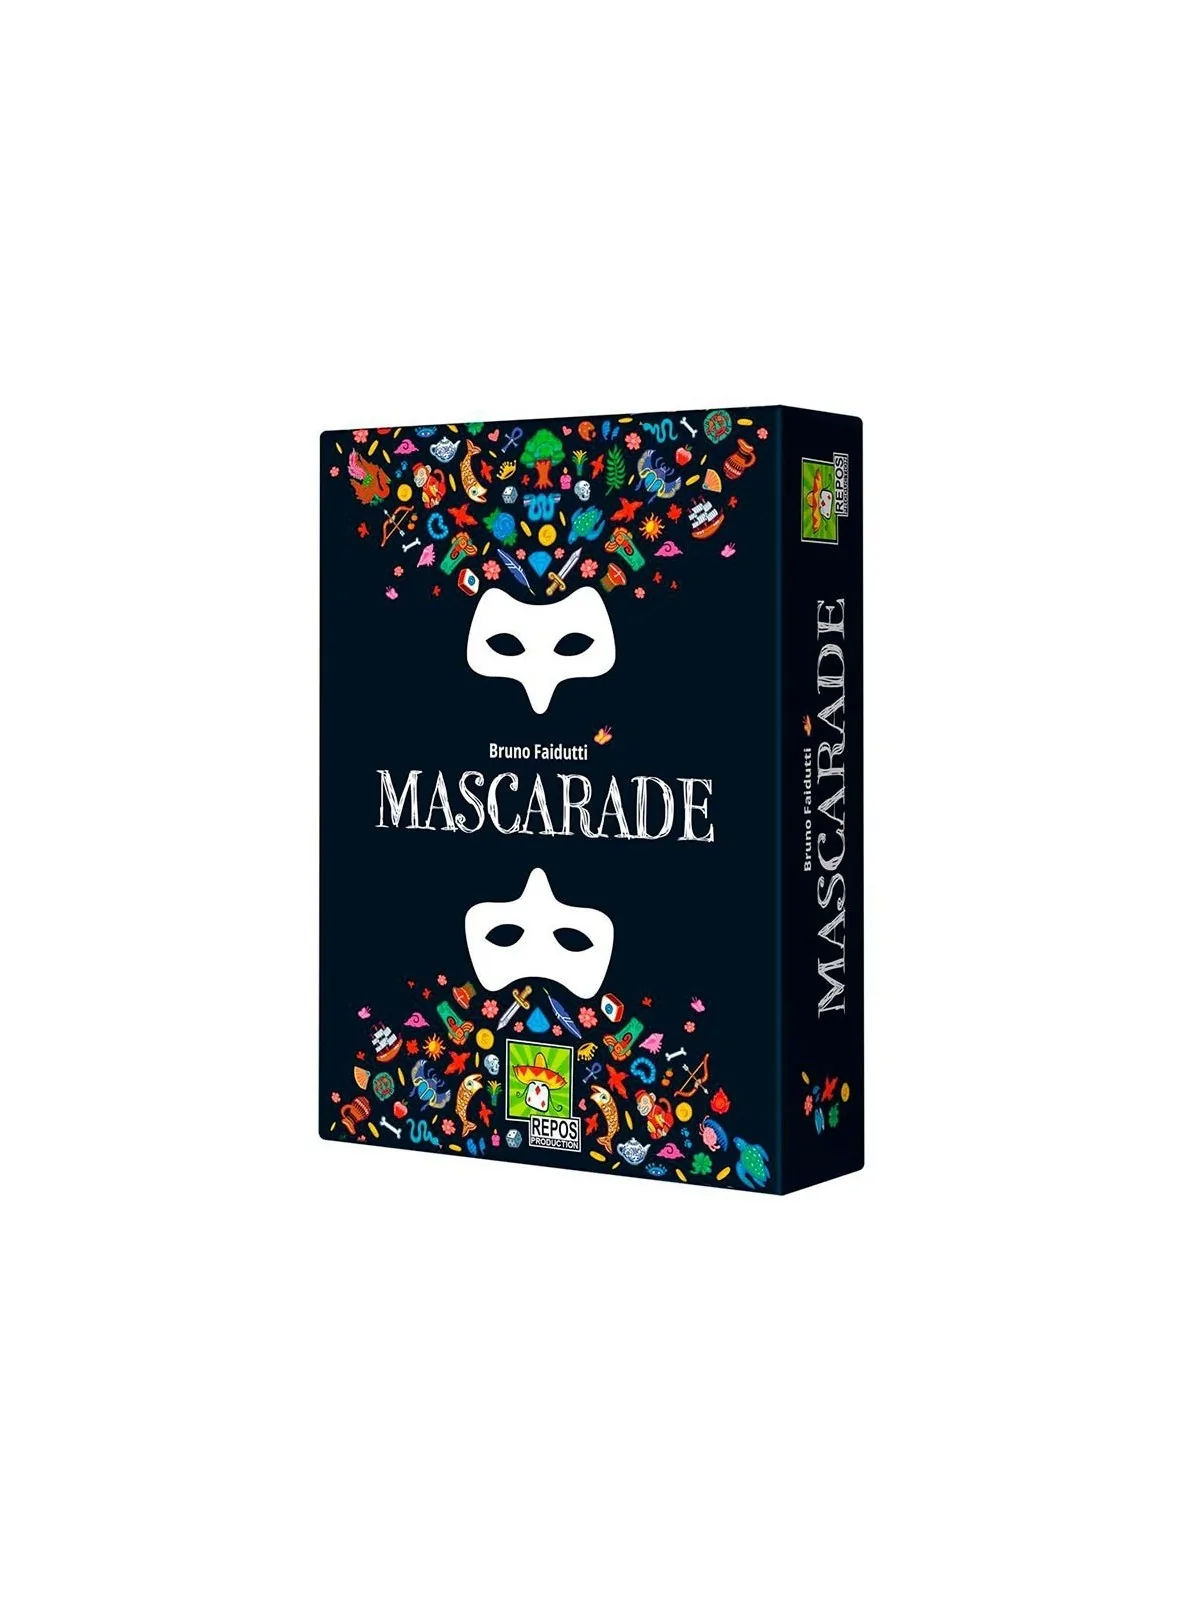 Comprar Mascarade: Nueva Edición barato al mejor precio 17,96 € de Rep